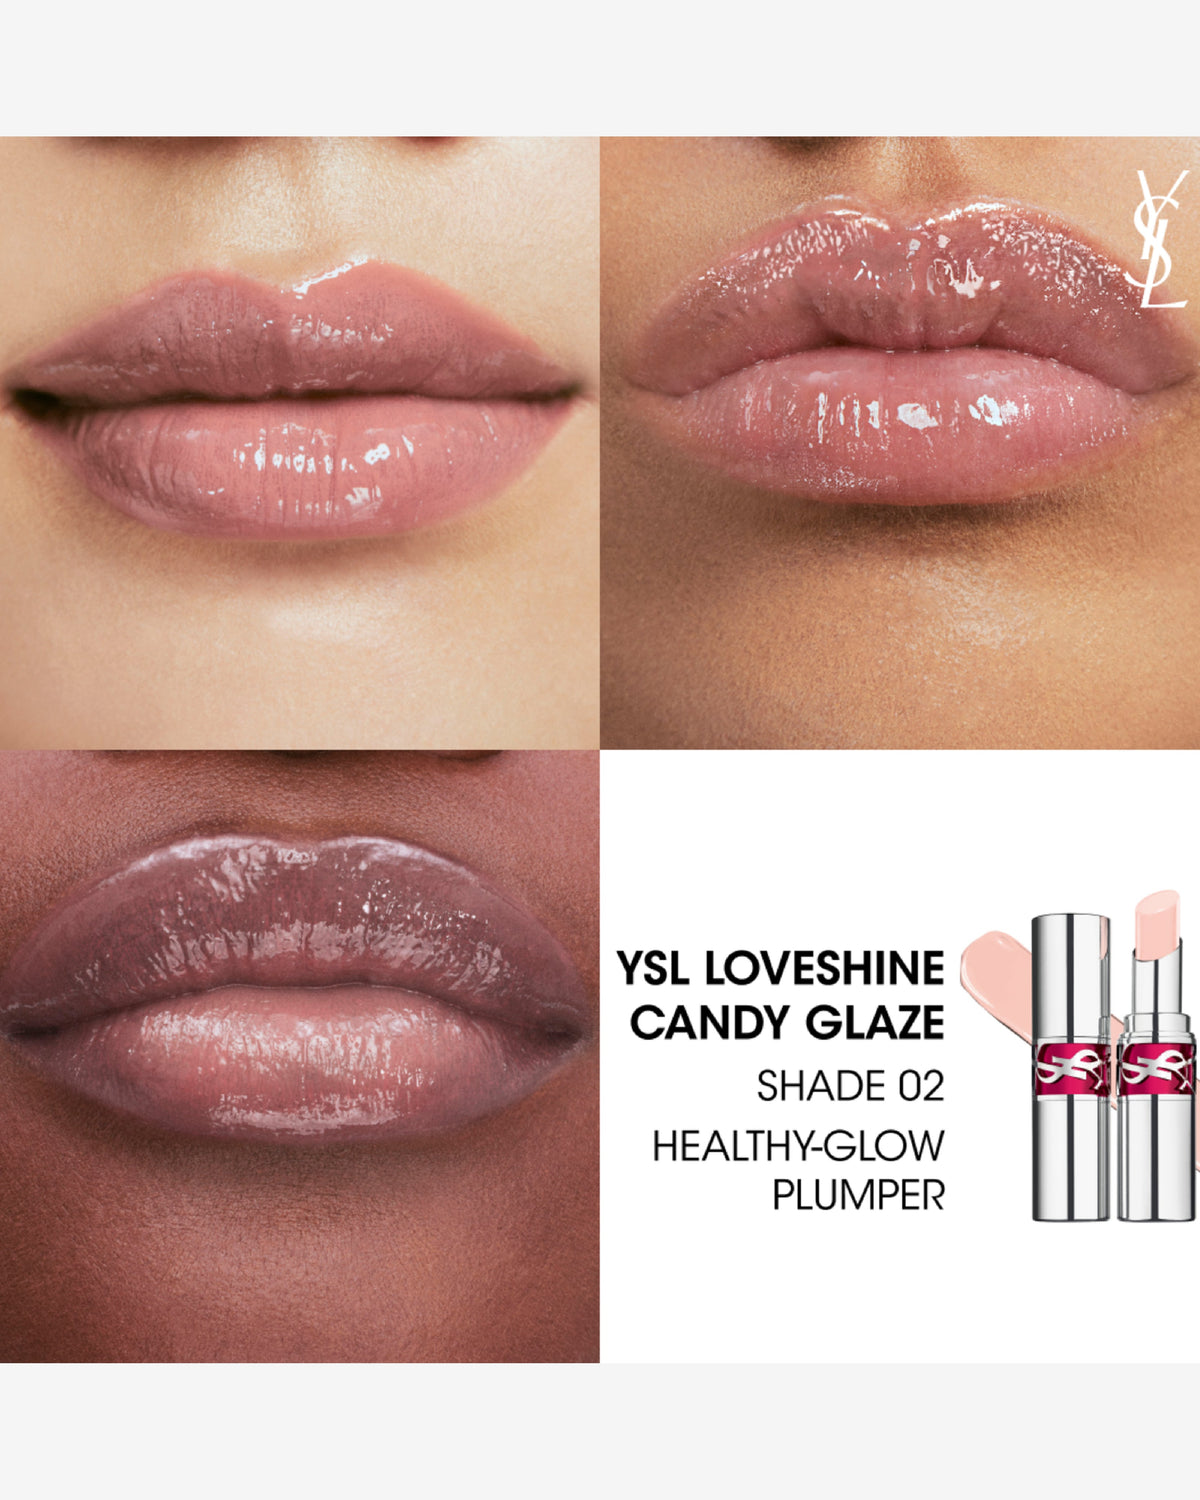 Ysl Loveshine Candy Glaze